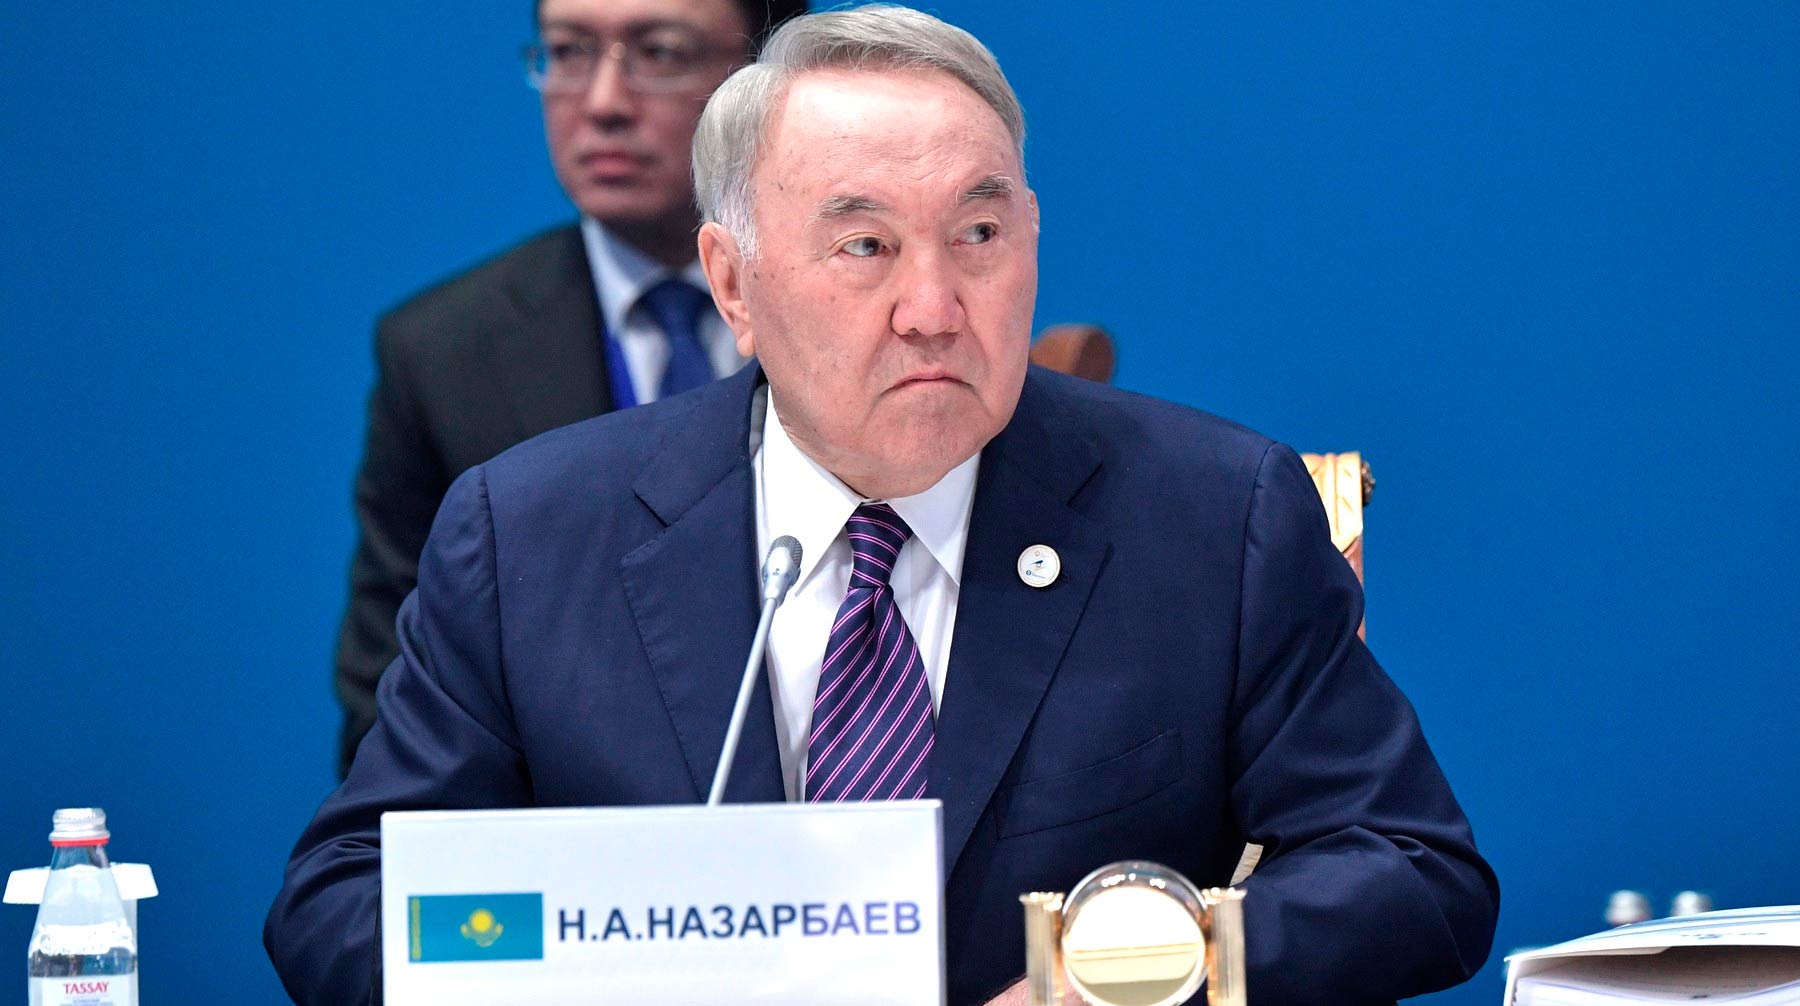 Два особняка и квартира в Лондоне родственников первого президента Казахстана оценивается более чем в 100 миллионов долларов Фото: © Kremlin Pool